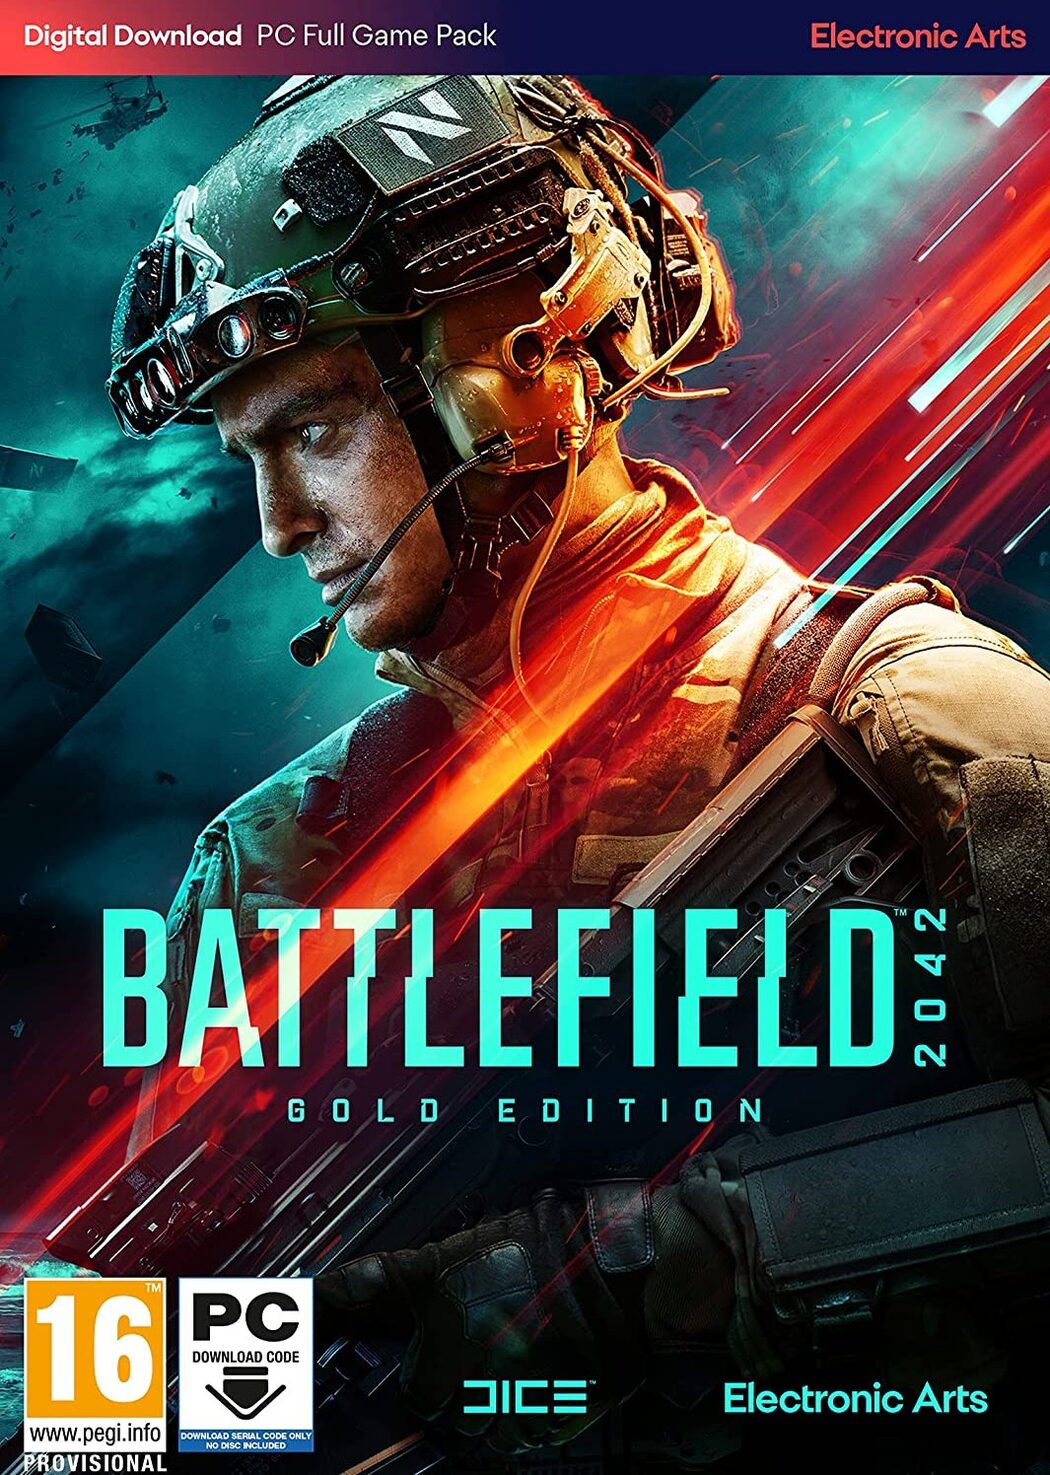 Battlefield V encontra-se com (muito) bom aspeto